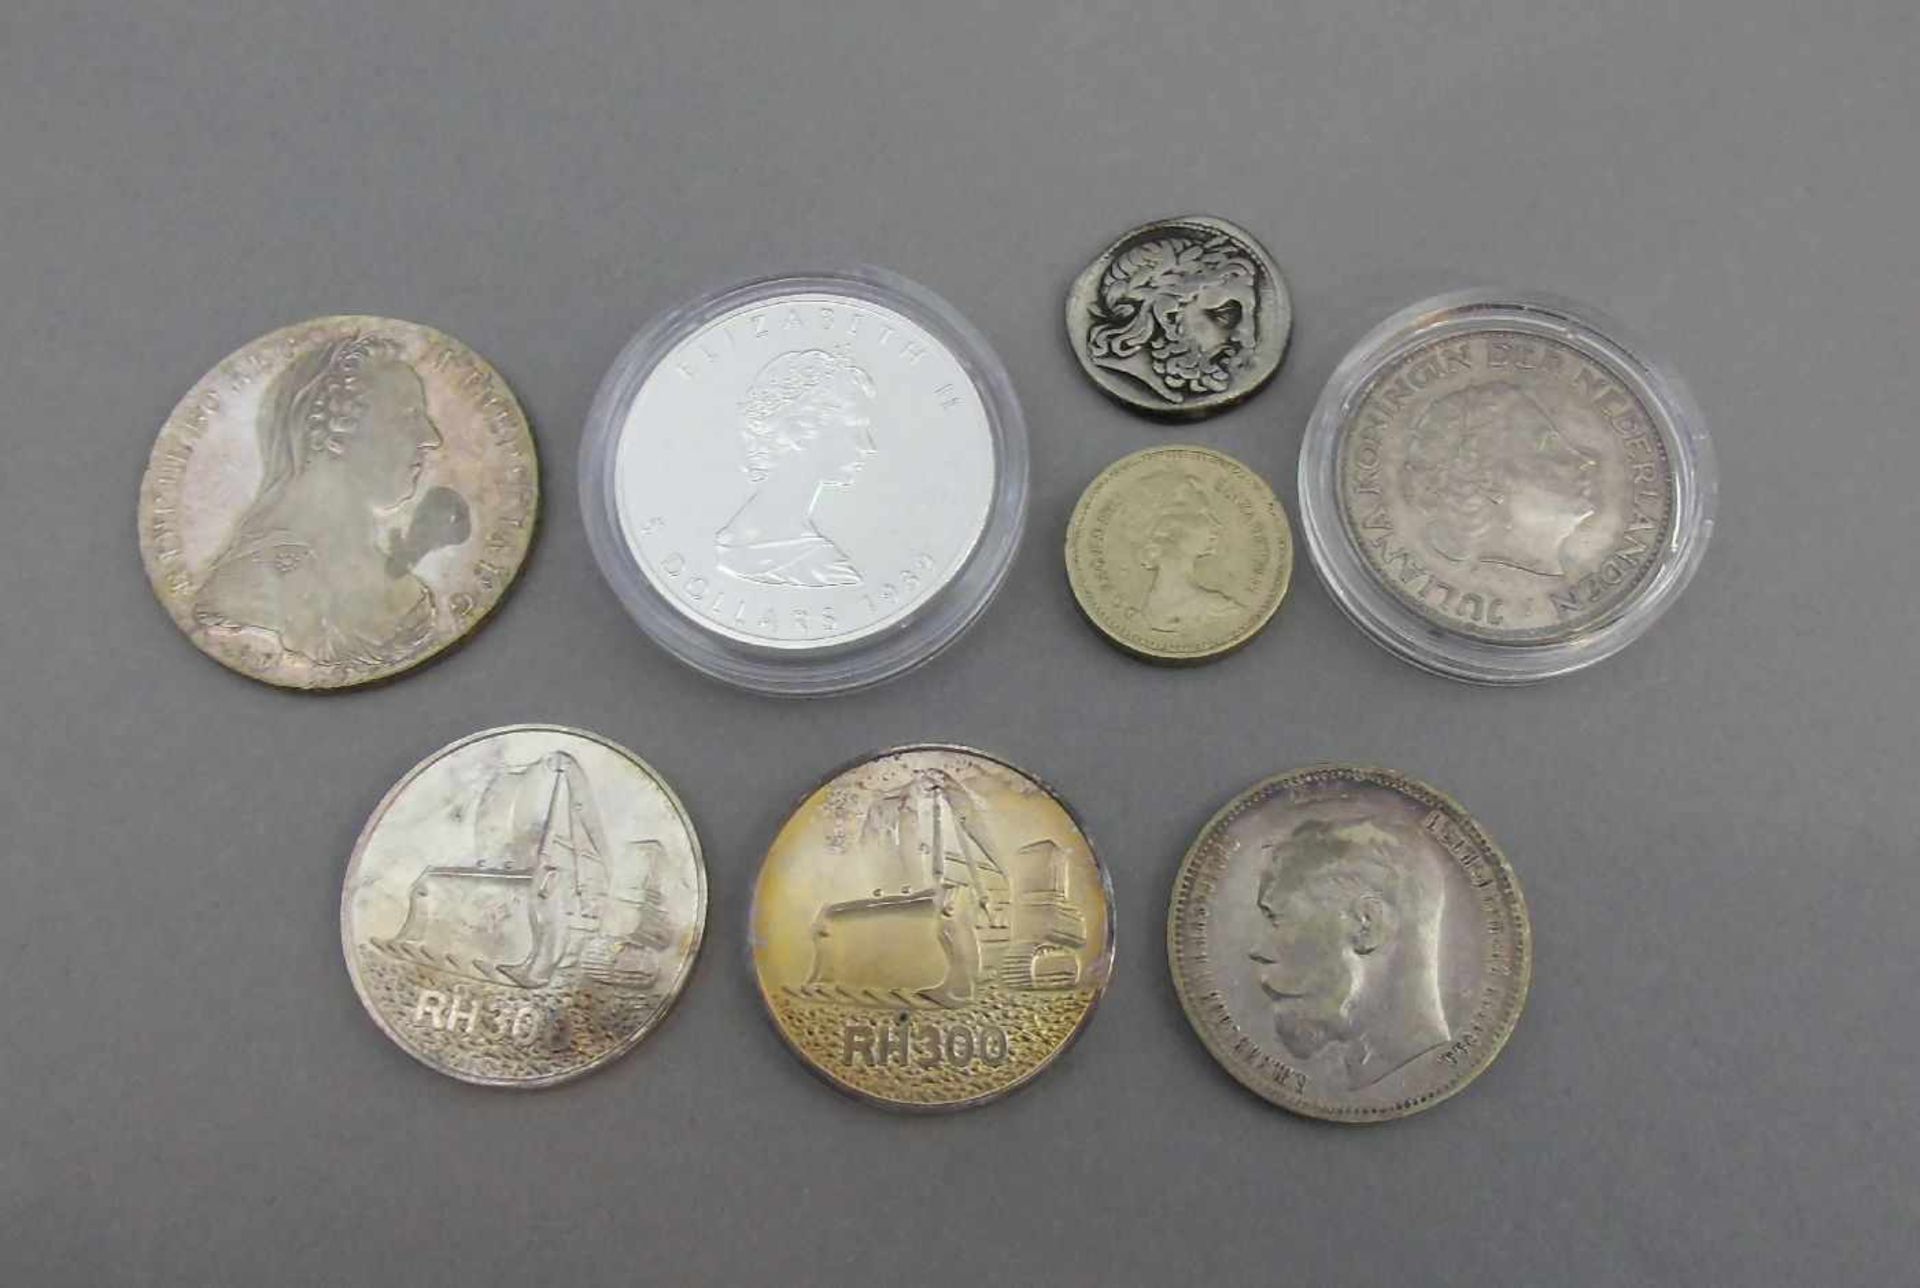 KONVOLUT MÜNZEN / SILBERMÜNZEN / coins, 20. Jh., unterschiedliche Nominalwerte und